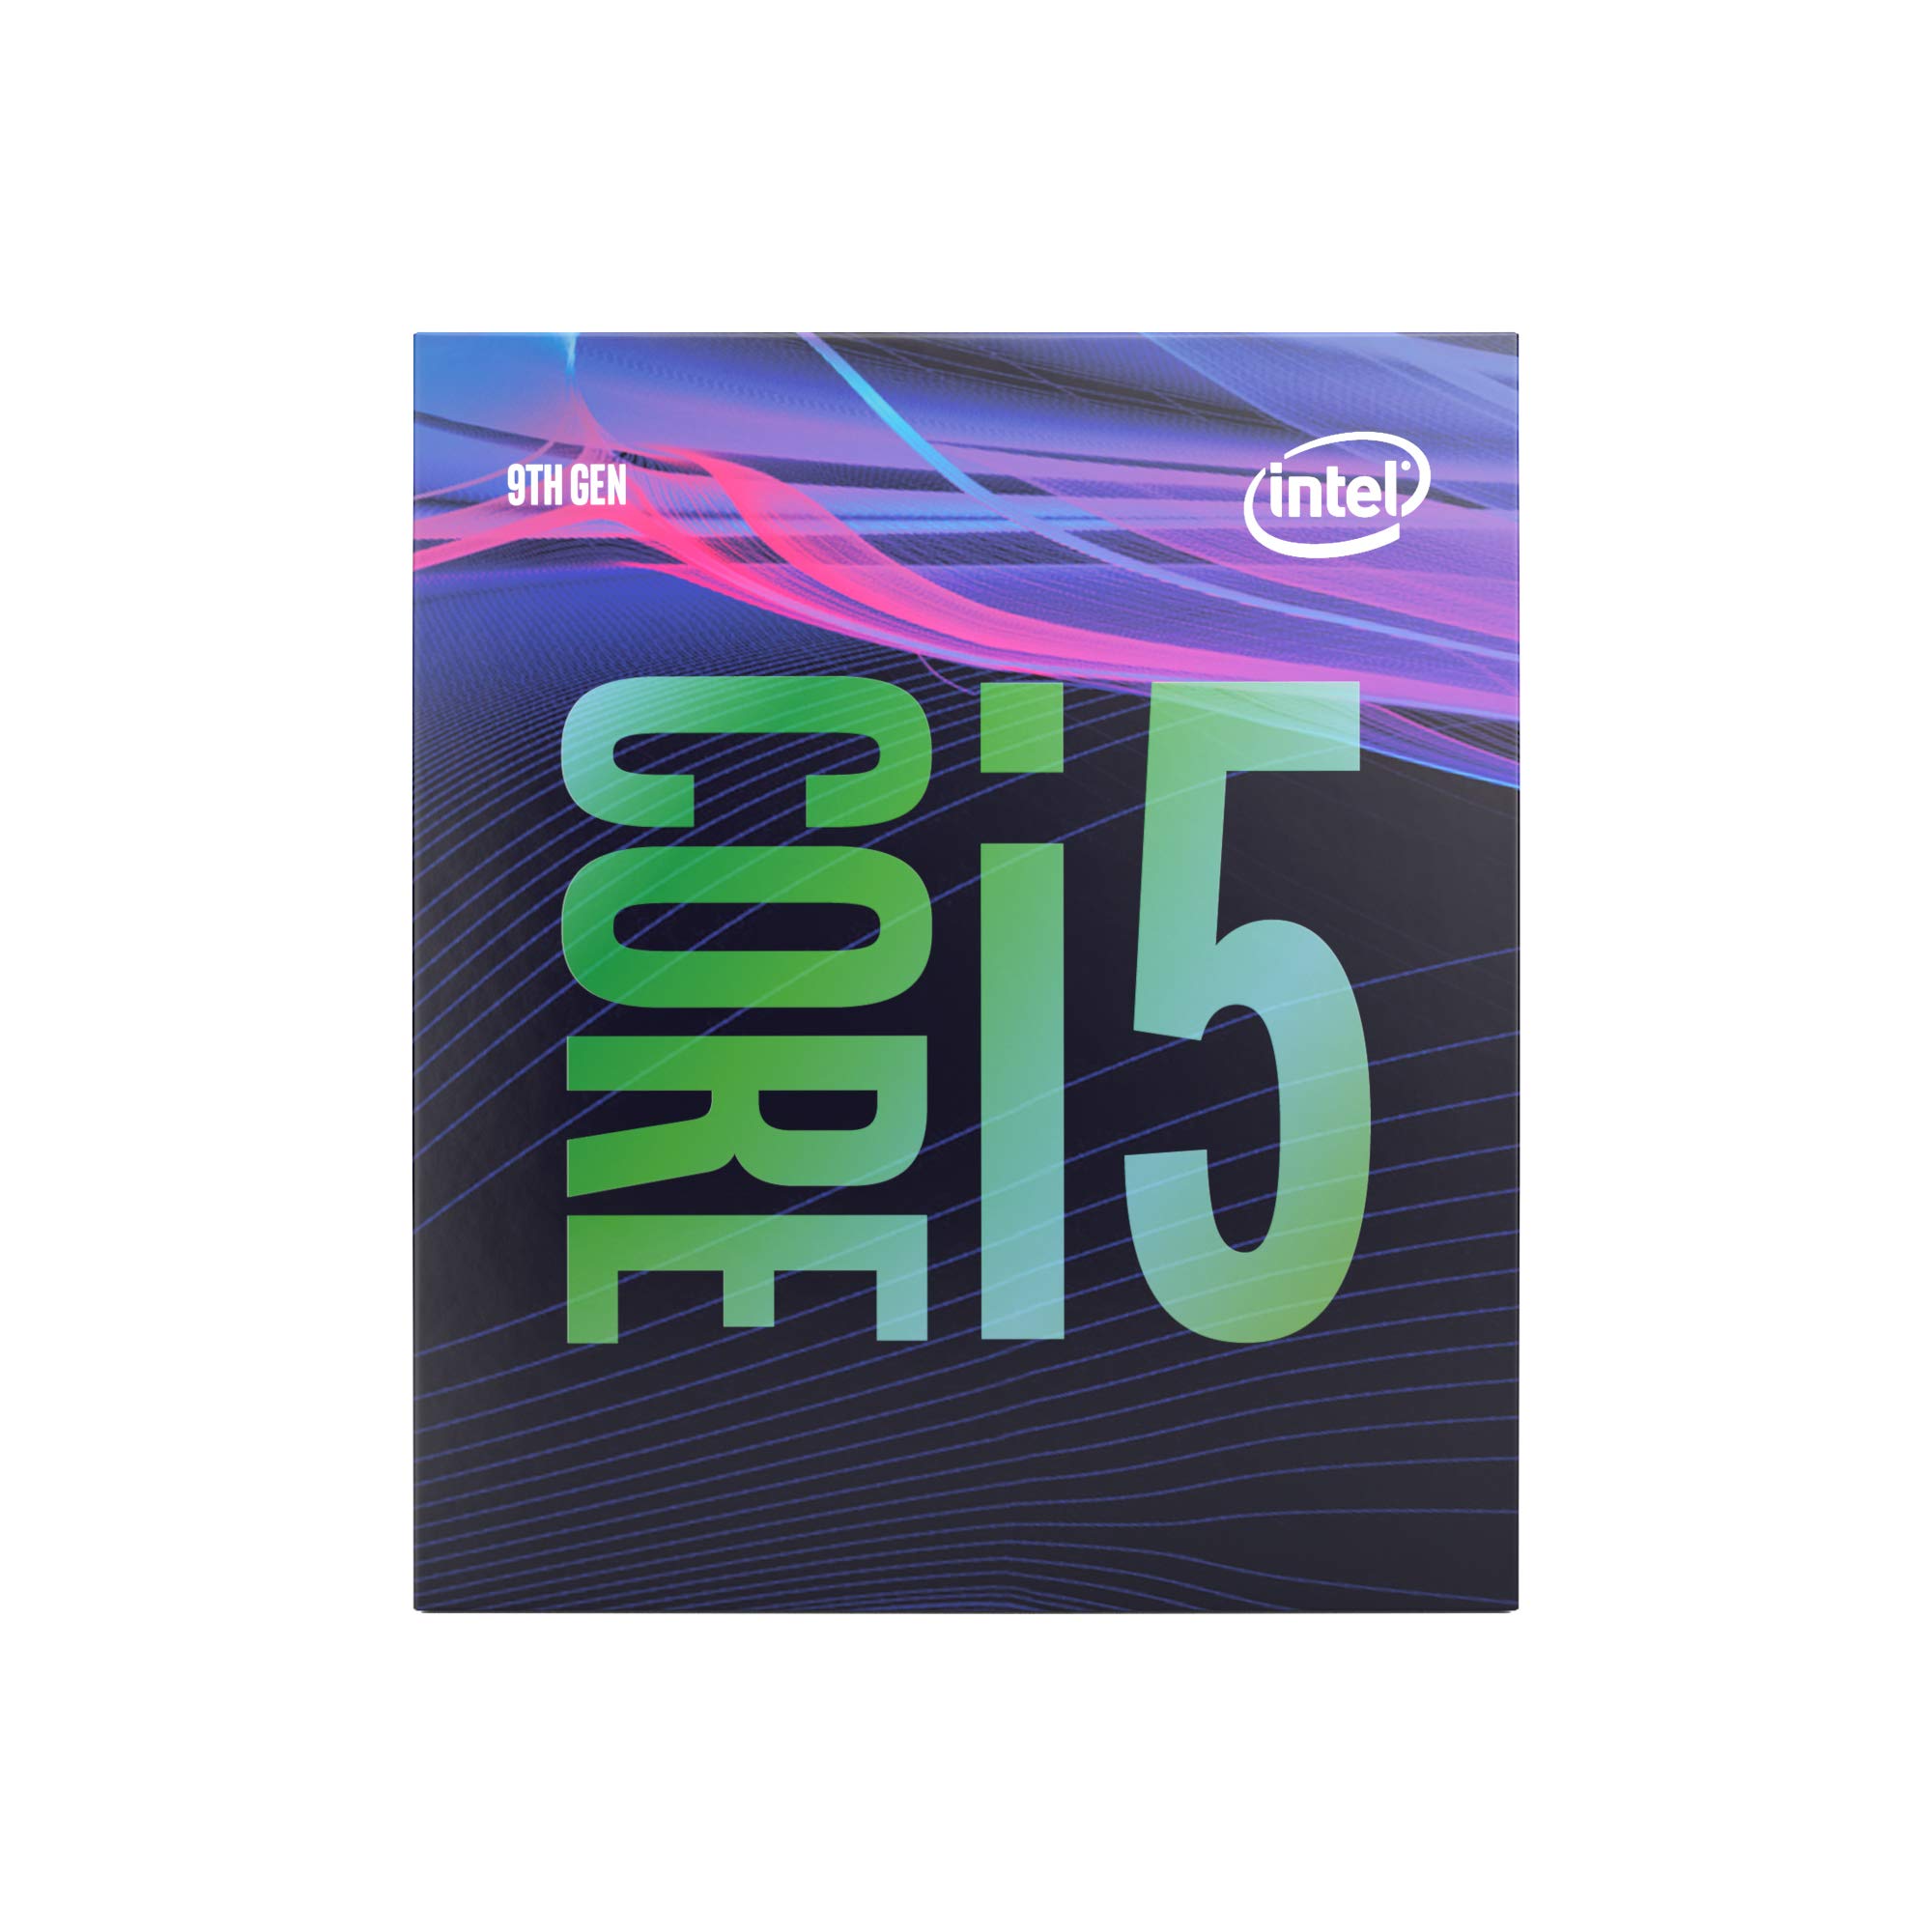 INTEL インテル Core i5-9500 6コア 9MBキャッシュ LGA1151 CPU BX80684I59500 BOX削除流通商品